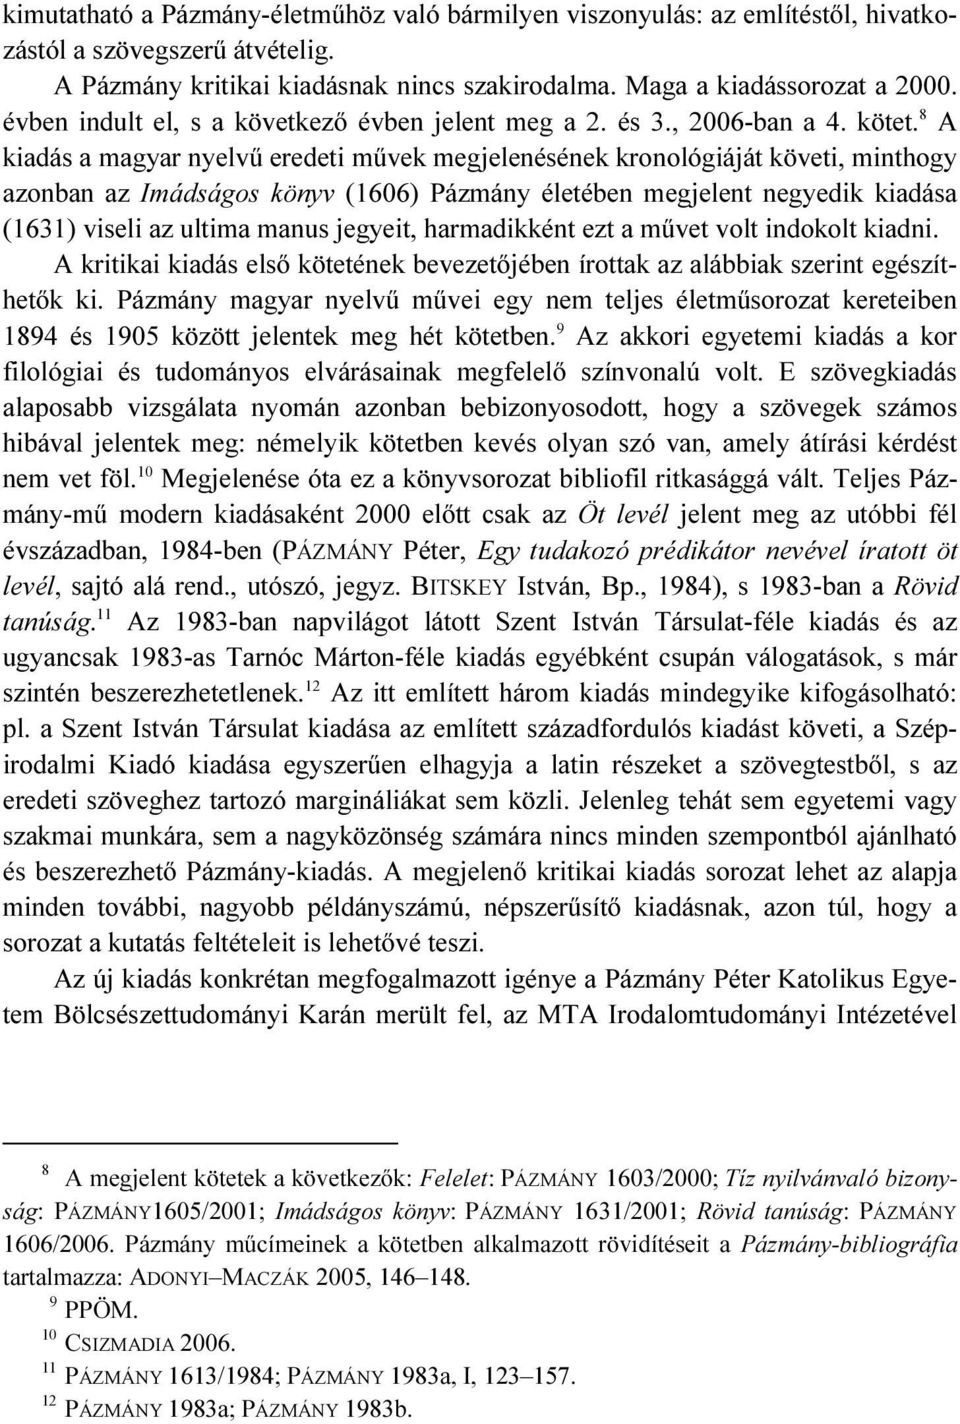 8 A kiadás a magyar nyelvű eredeti művek megjelenésének kronológiáját követi, minthogy azonban az Imádságos könyv (1606) Pázmány életében megjelent negyedik kiadása (1631) viseli az ultima manus